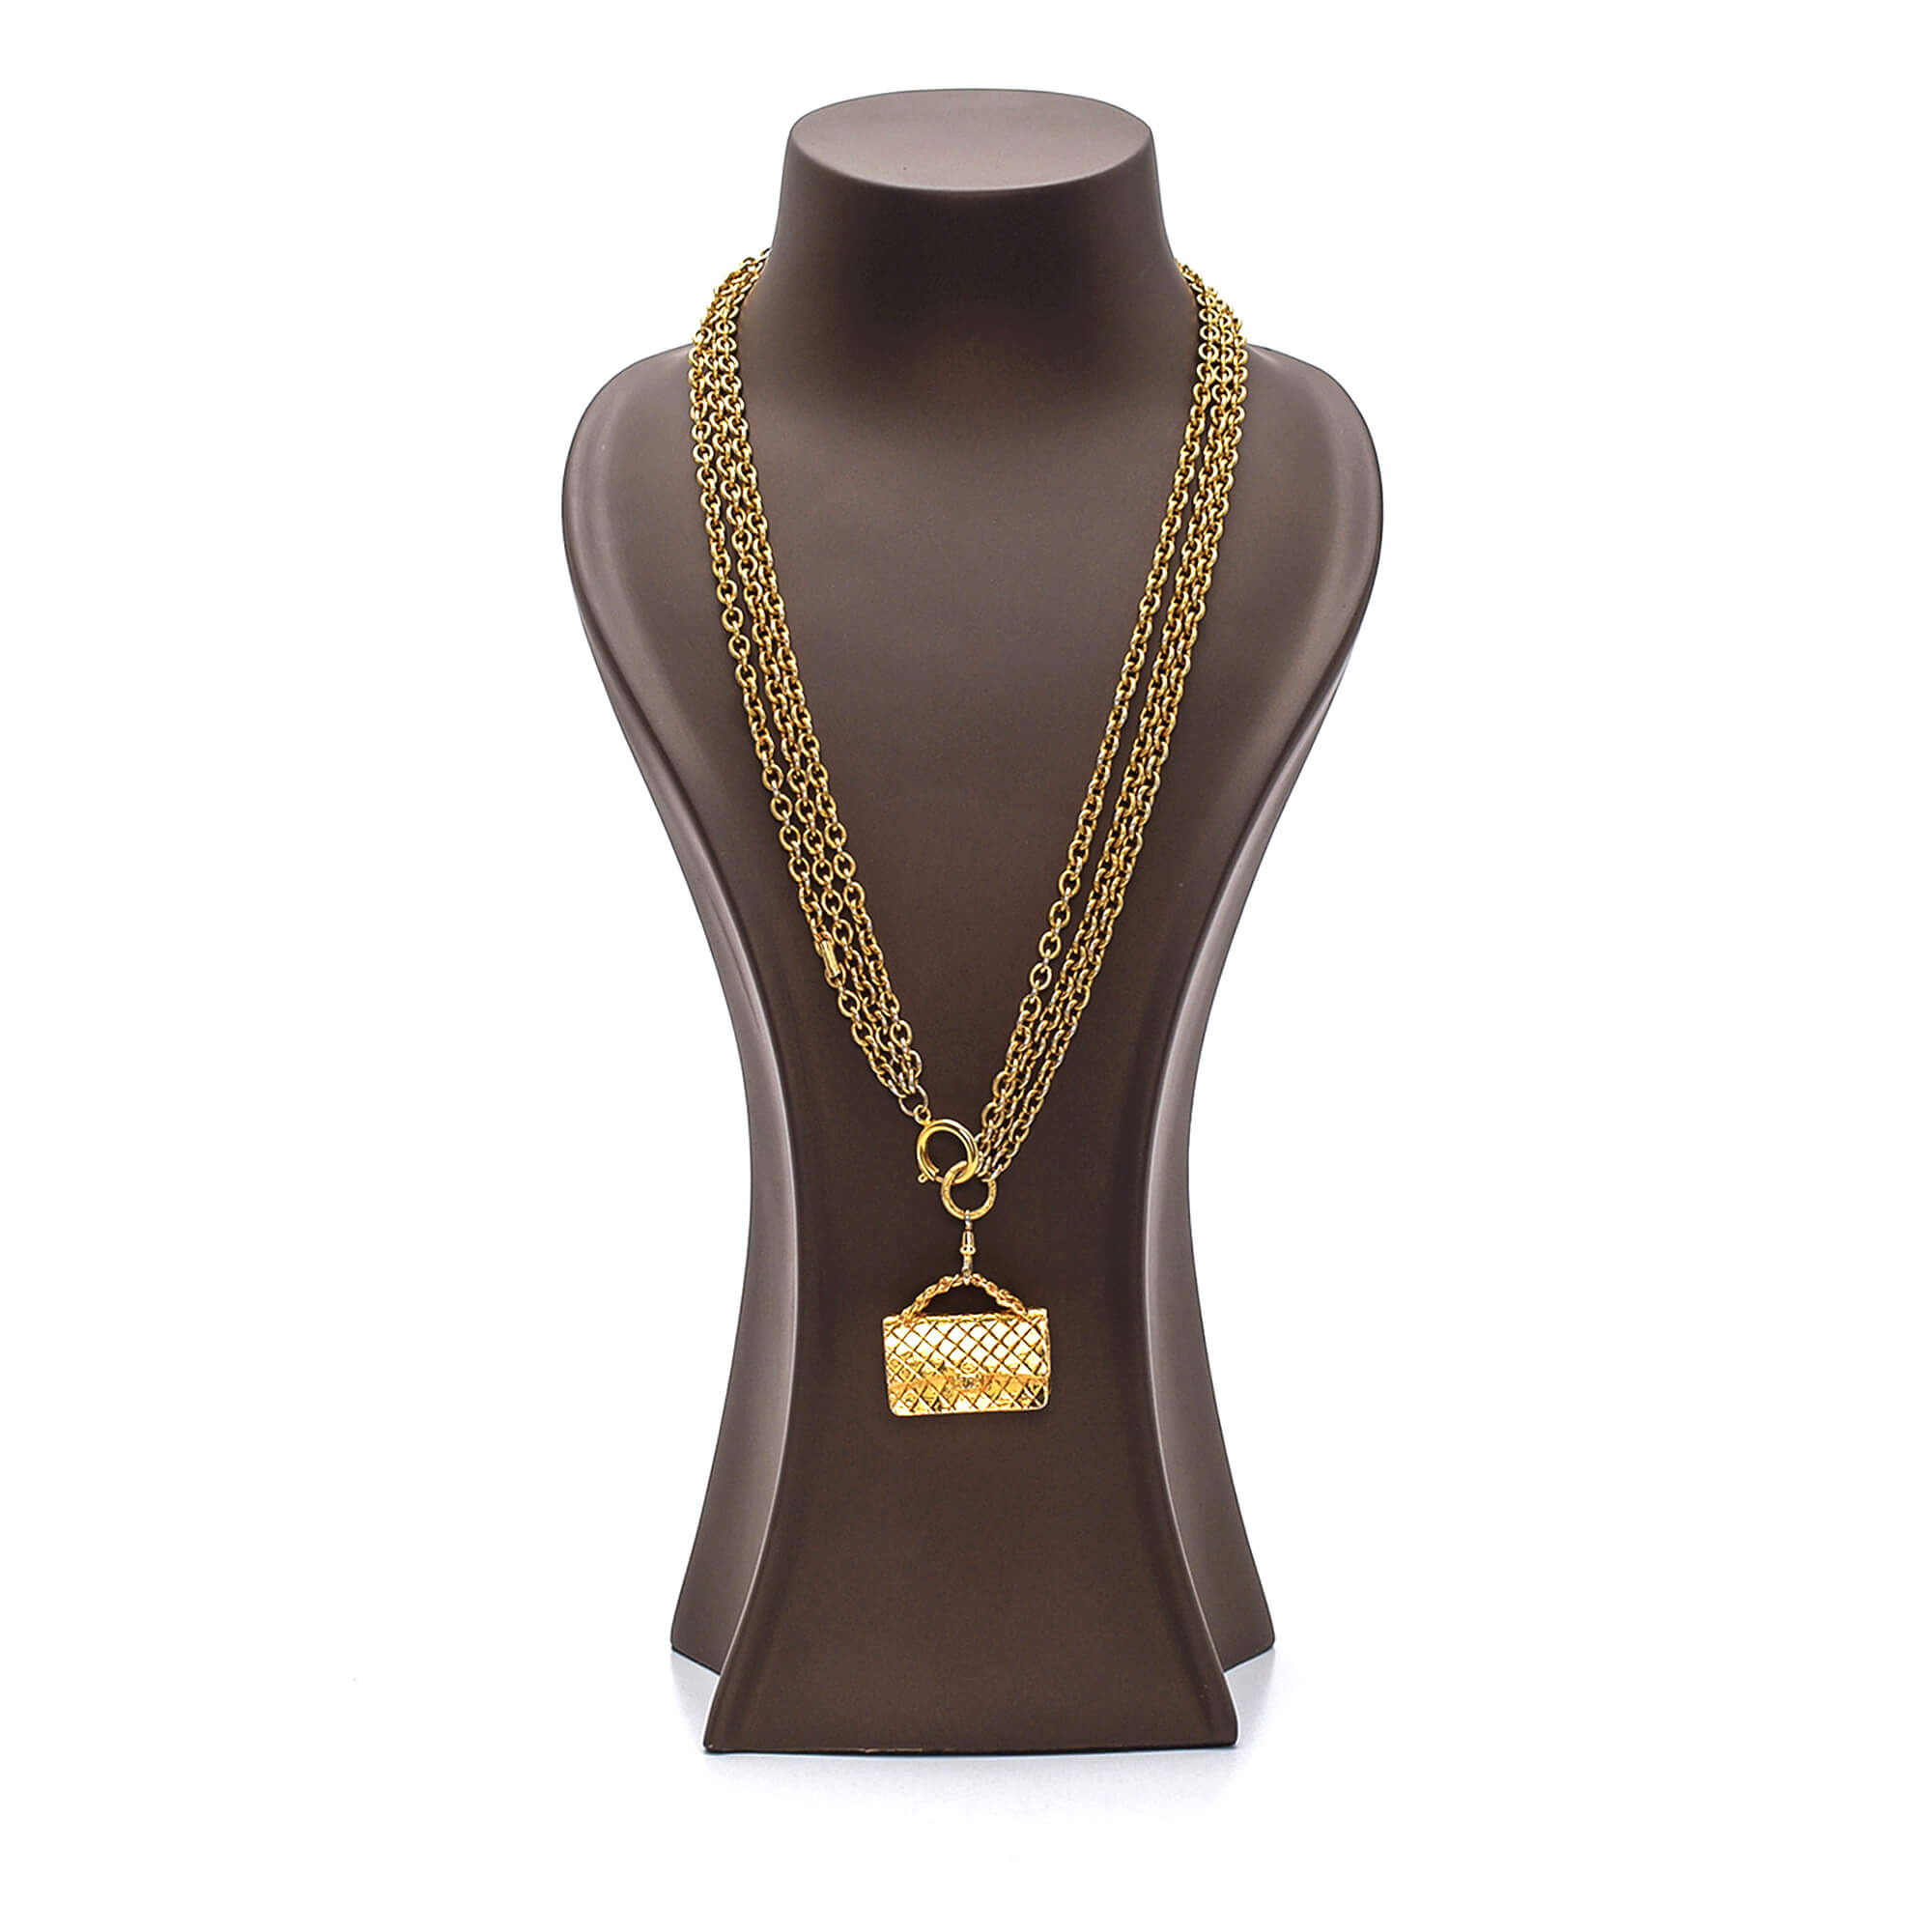 Chanel - Gold Flap Bag Pendant Triple Charm Chain Necklace 